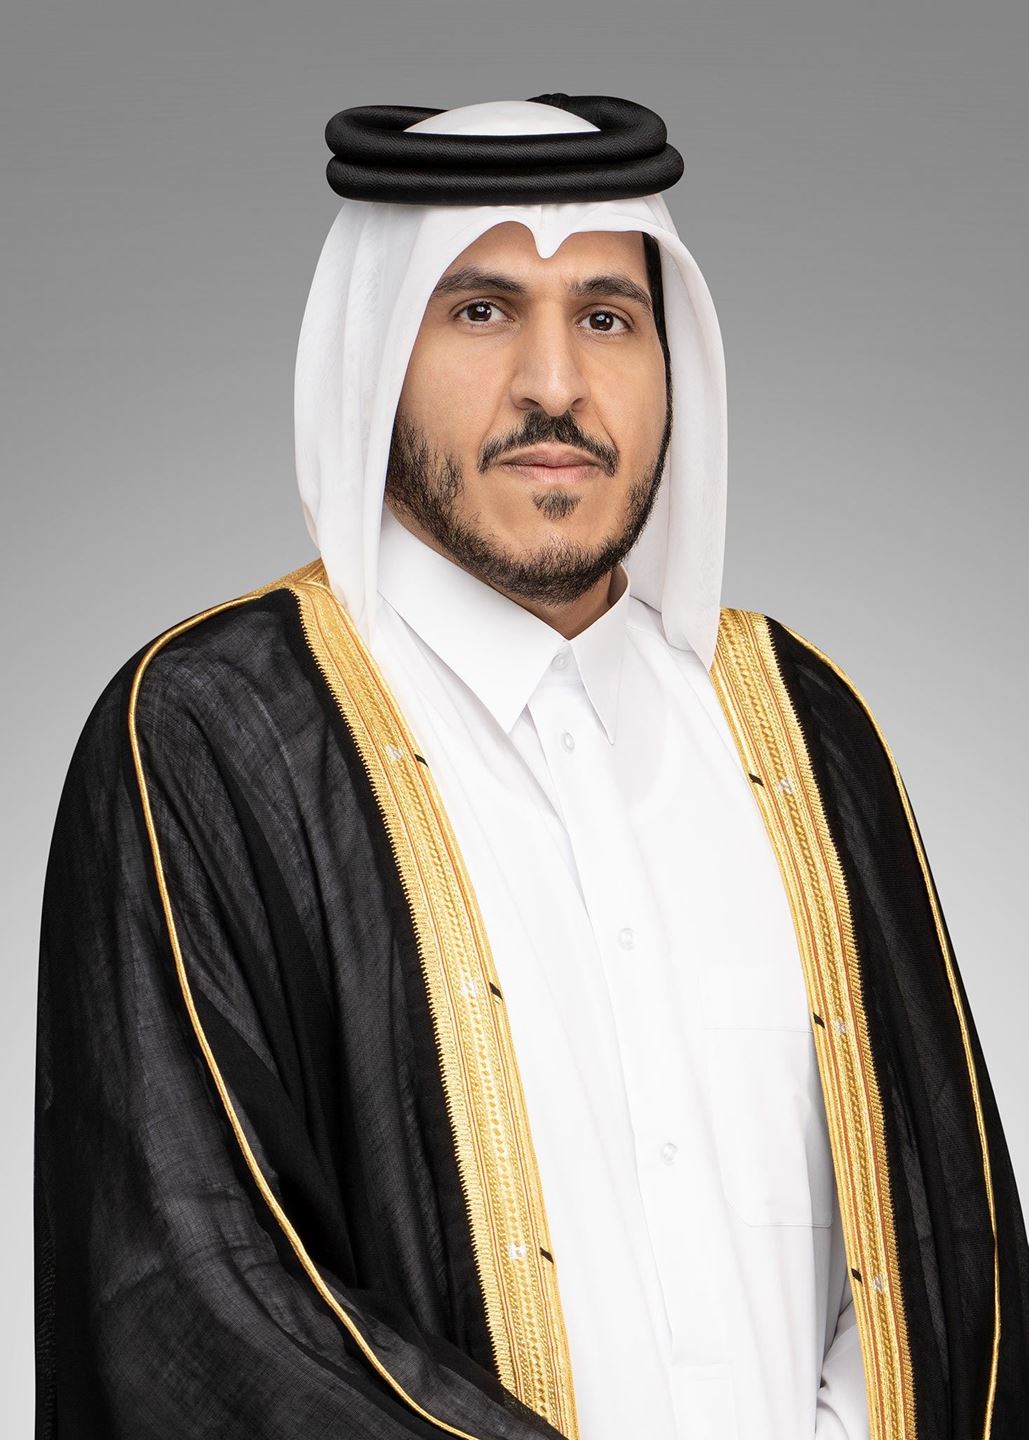 سعادة الشيخ محمد بن حمد بن قاسم آل ثاني، رئيس مجلس إدارة مصرف الريان